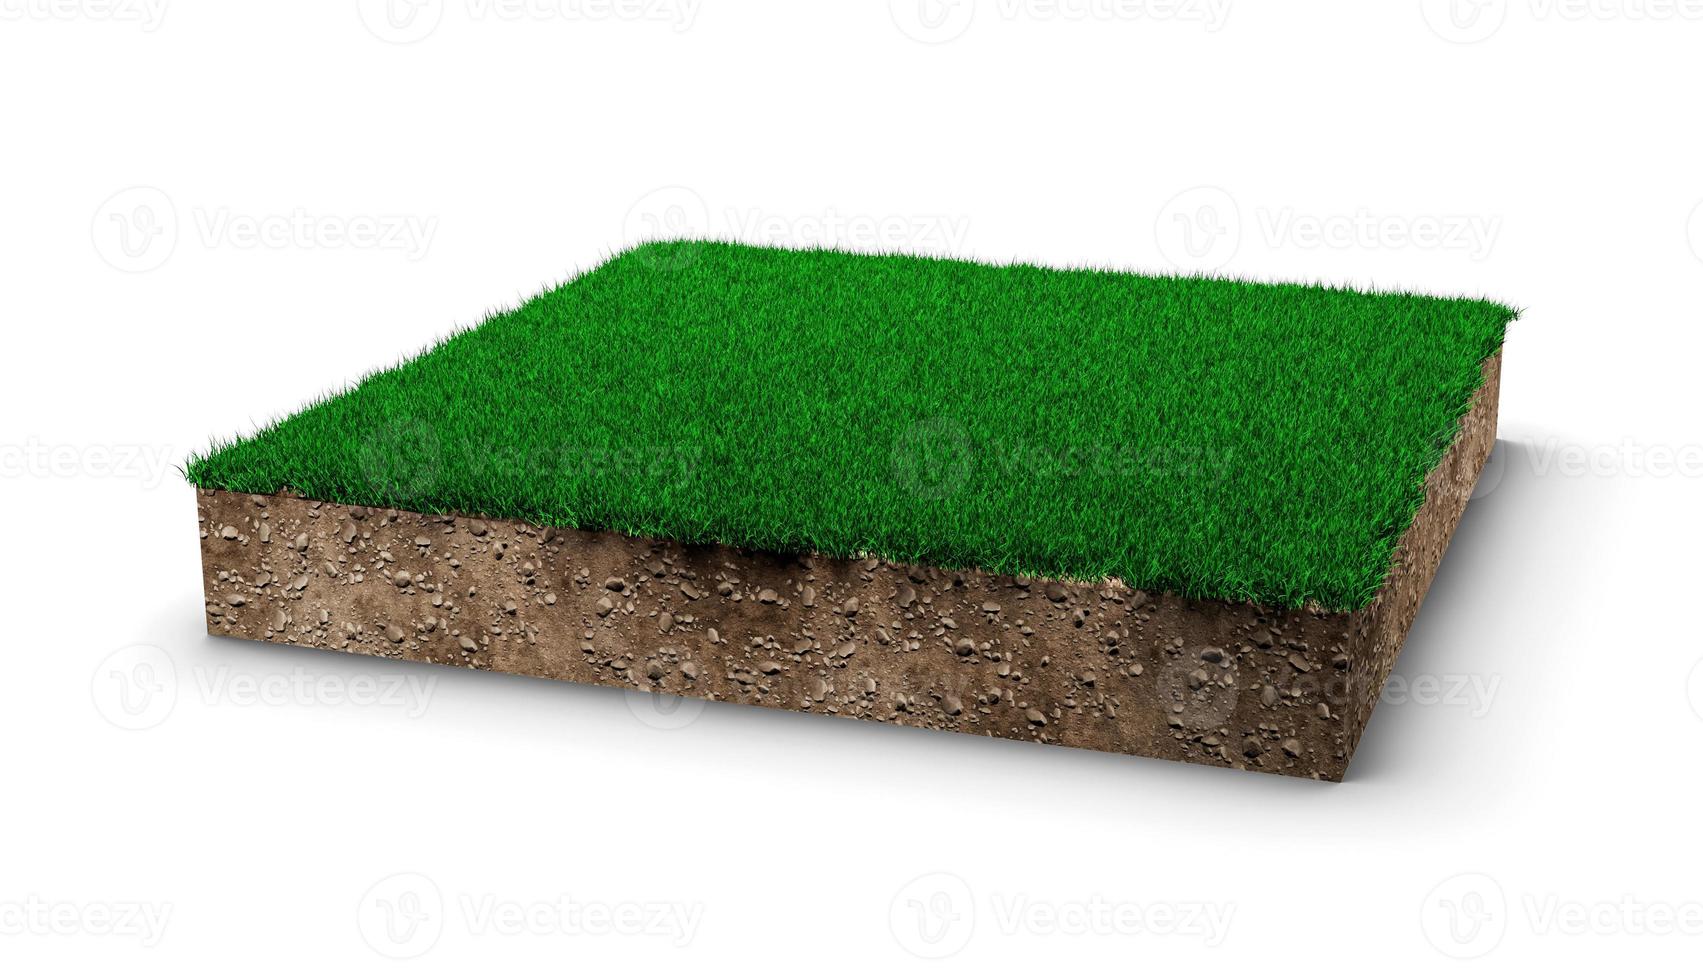 carré de champ d'herbe verte sur fond blanc herbe verte et section transversale de la texture du sol rocheux avec illustration 3d photo